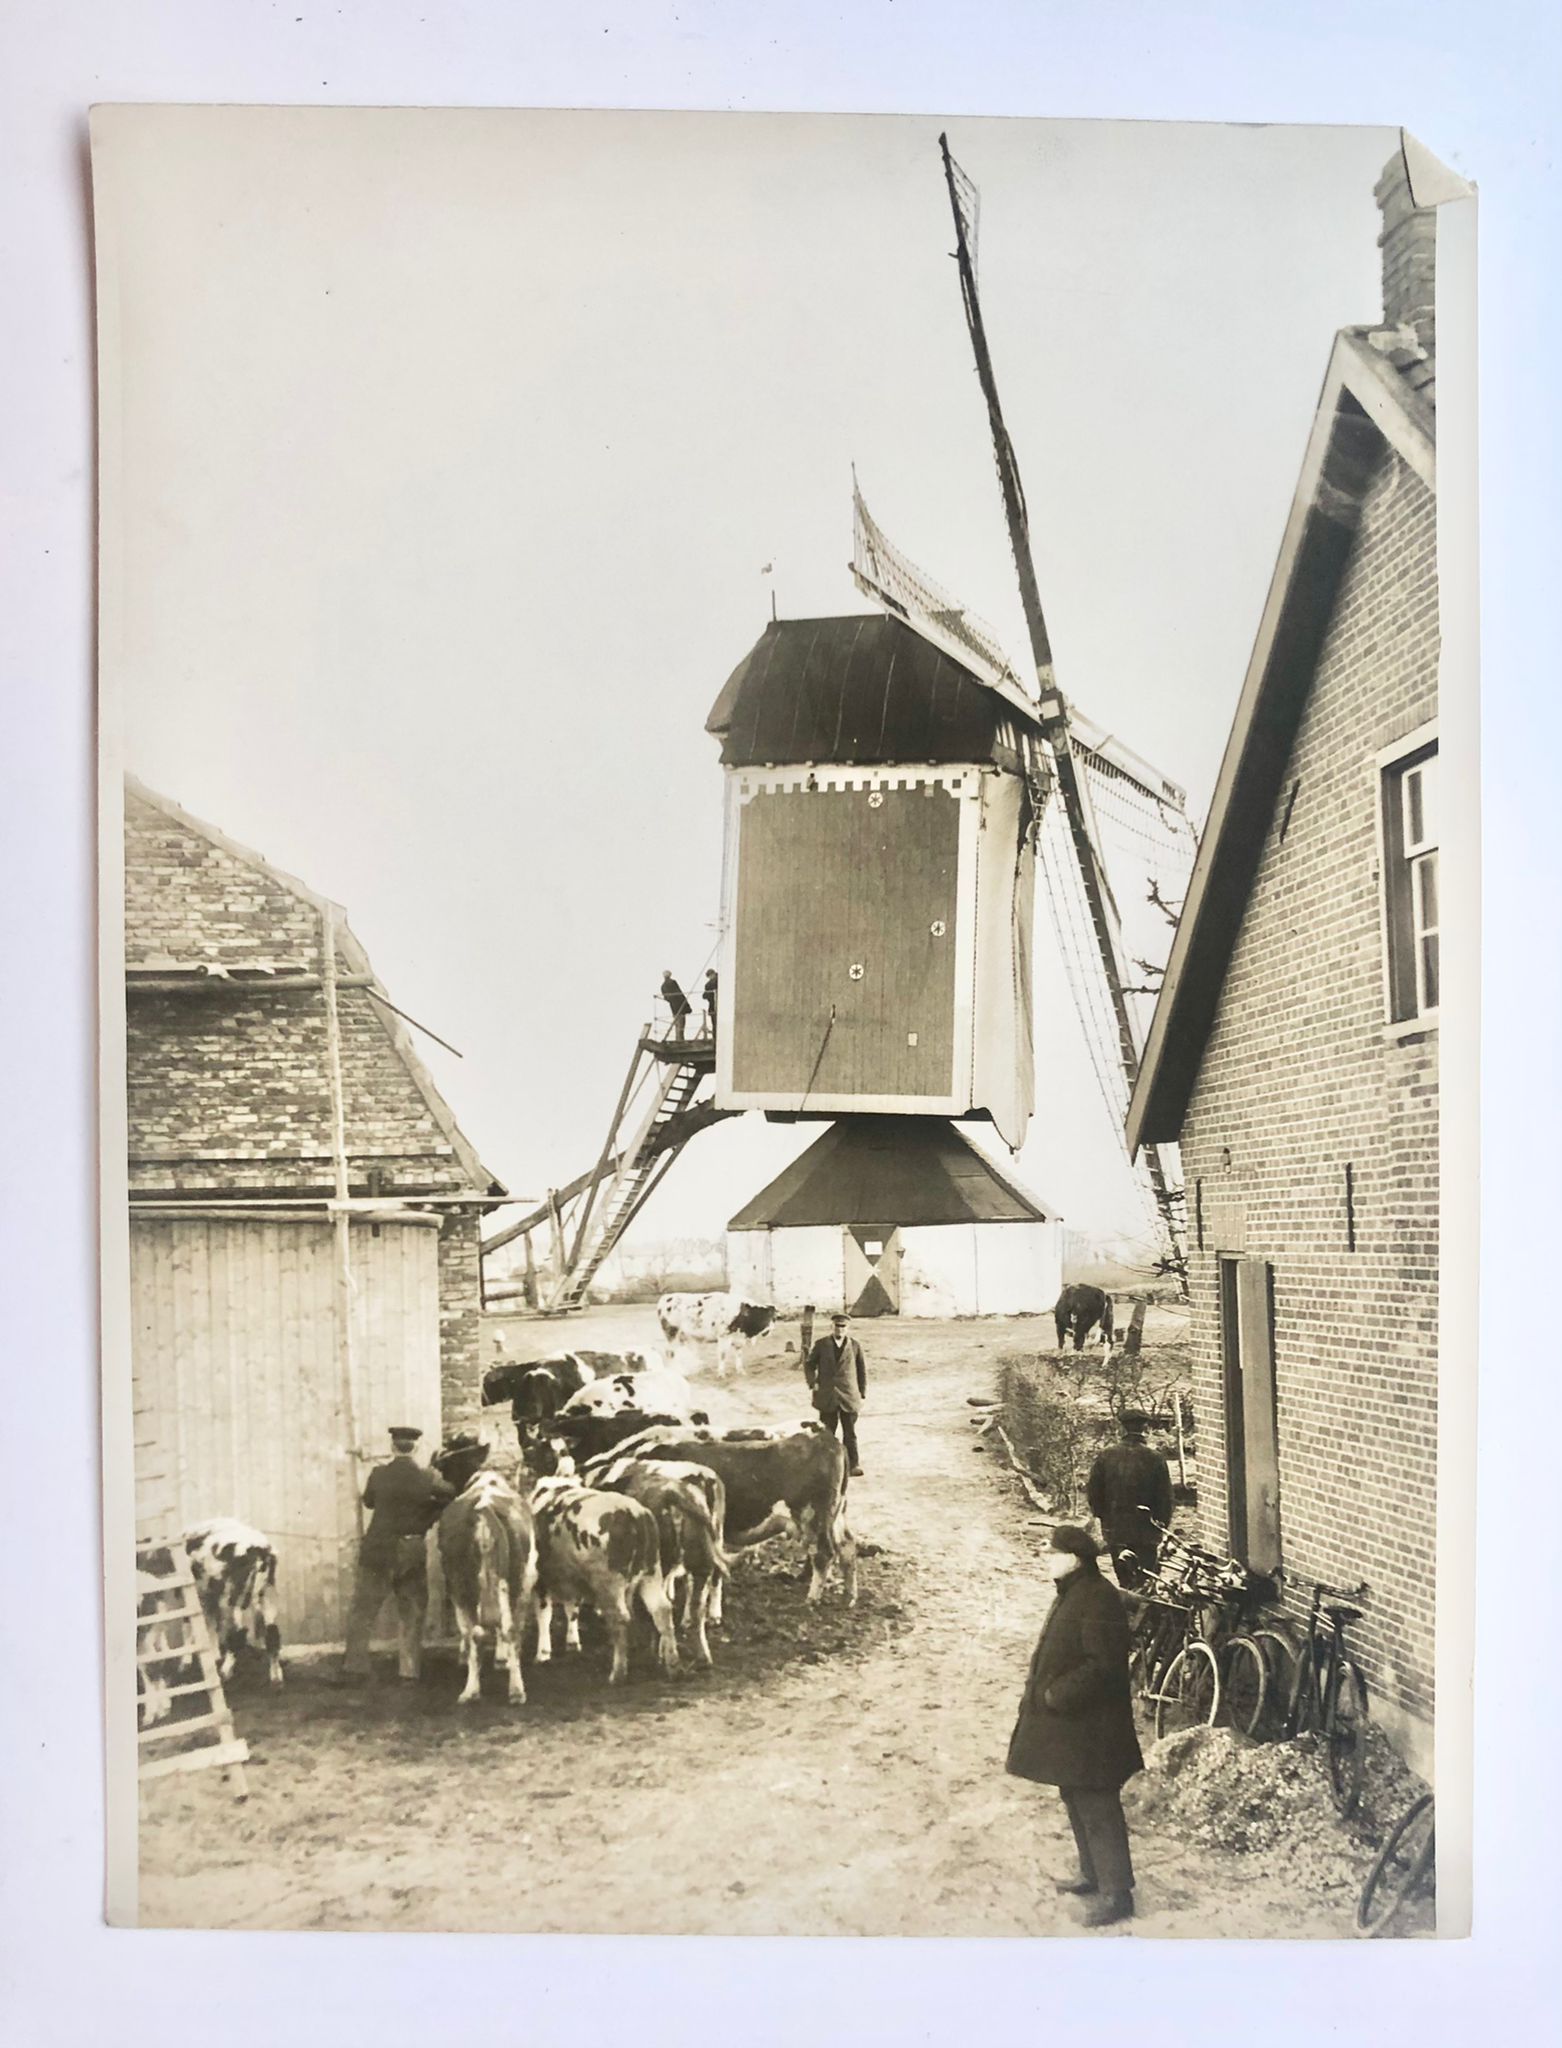  - [Photography, ZALK] Drie persfoto's, begin 20e eeuw, van de overstromingen (flood) te Zalk en omgeving (Nederasselt) op 1 januari 1926, elk 18x24 cm.